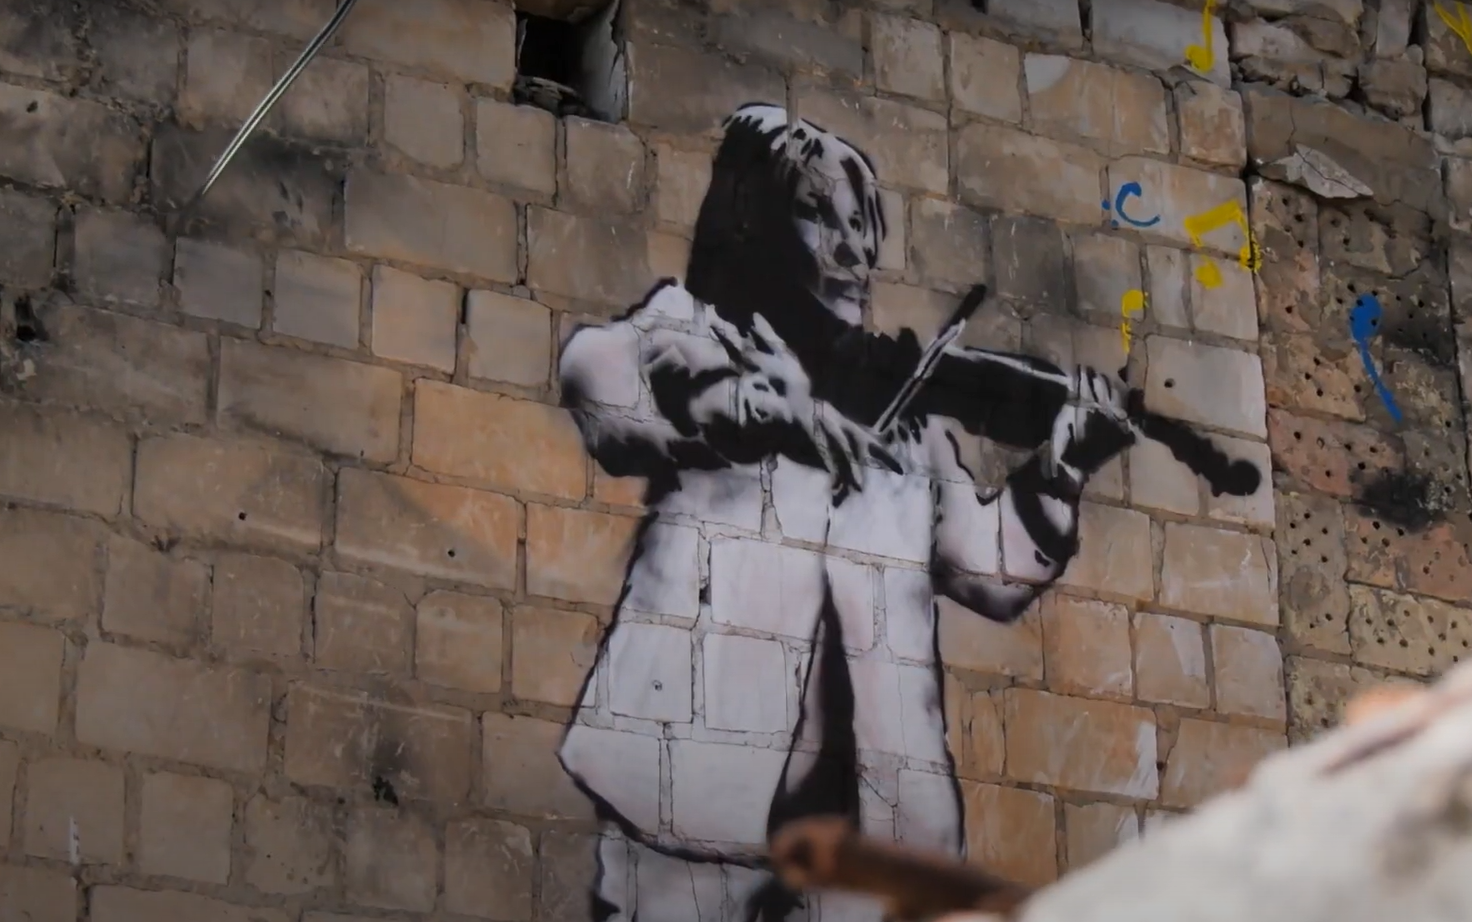 Вуличні художники із США створили нові стінописи Скрипалька та Слава Україні на зруйнованій будівлі у Бородянці.